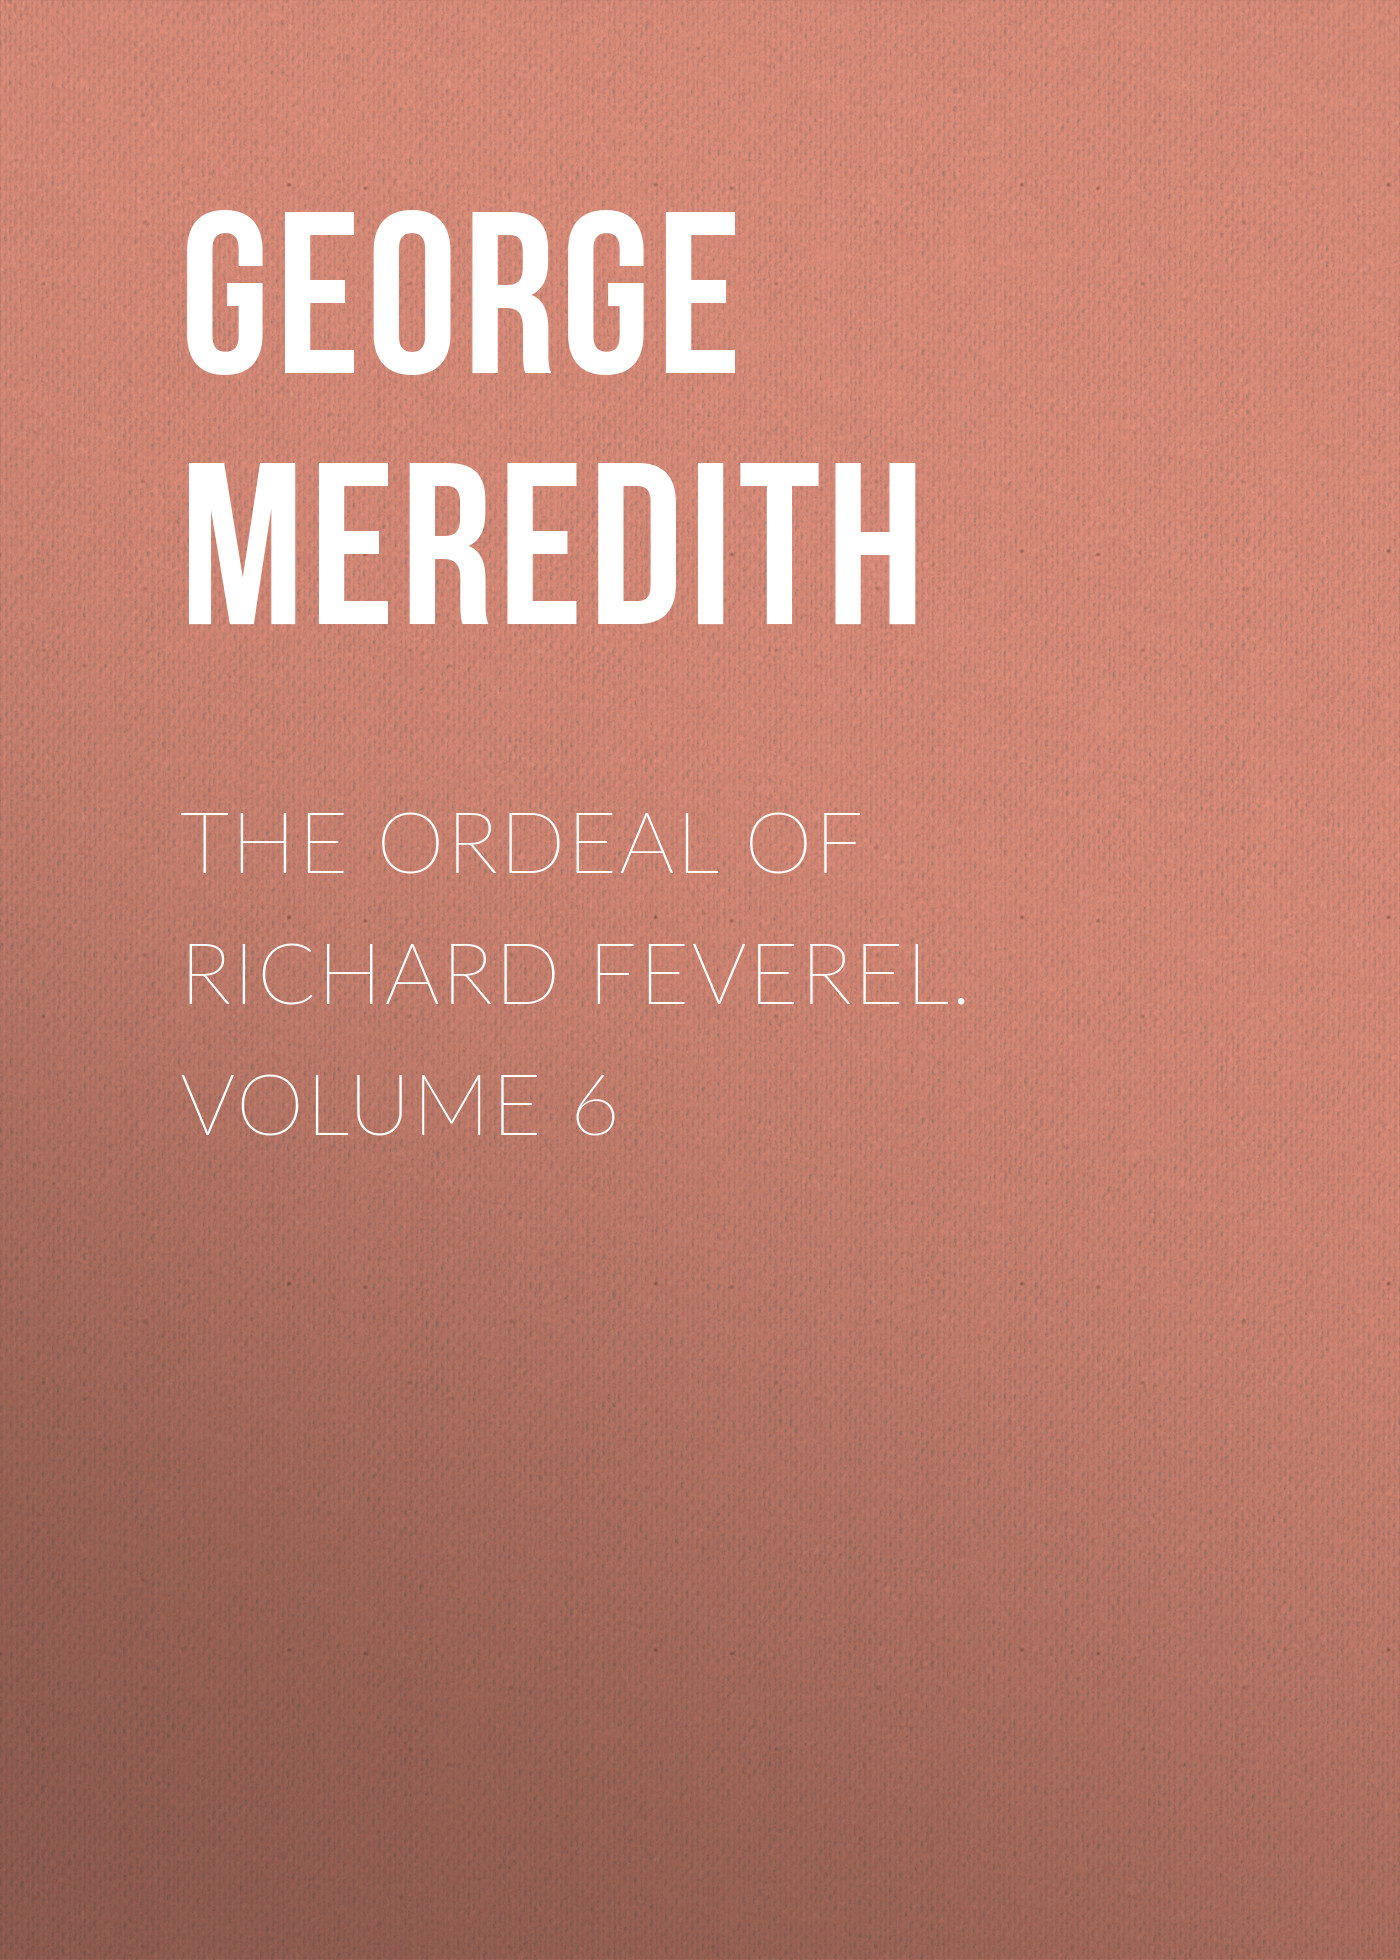 The Ordeal of Richard Feverel. Volume 6